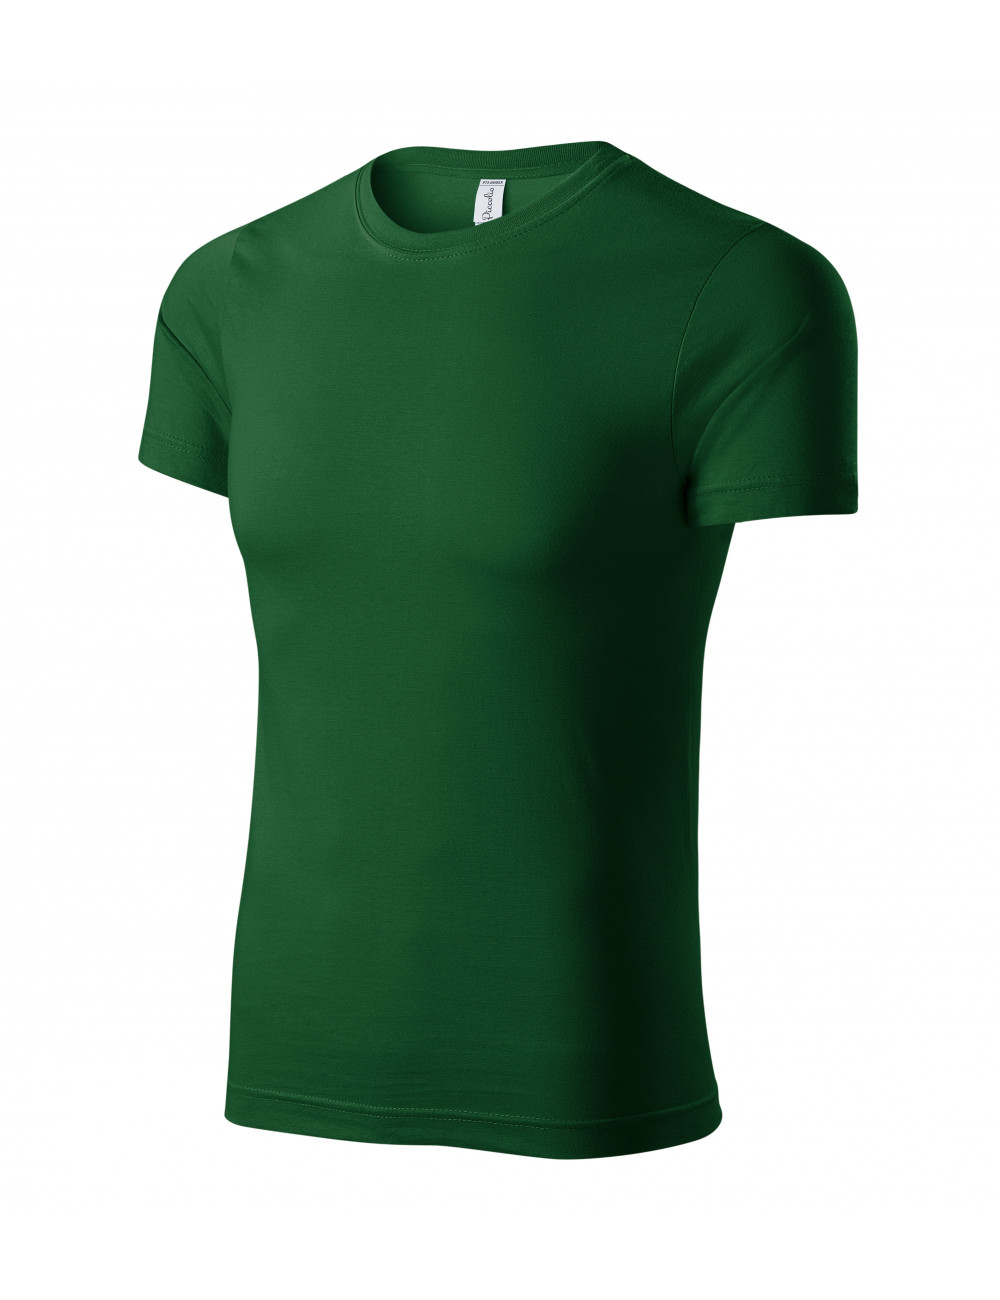 Unisex T-Shirt Farbe P73 Flaschengrün Adler Piccolio